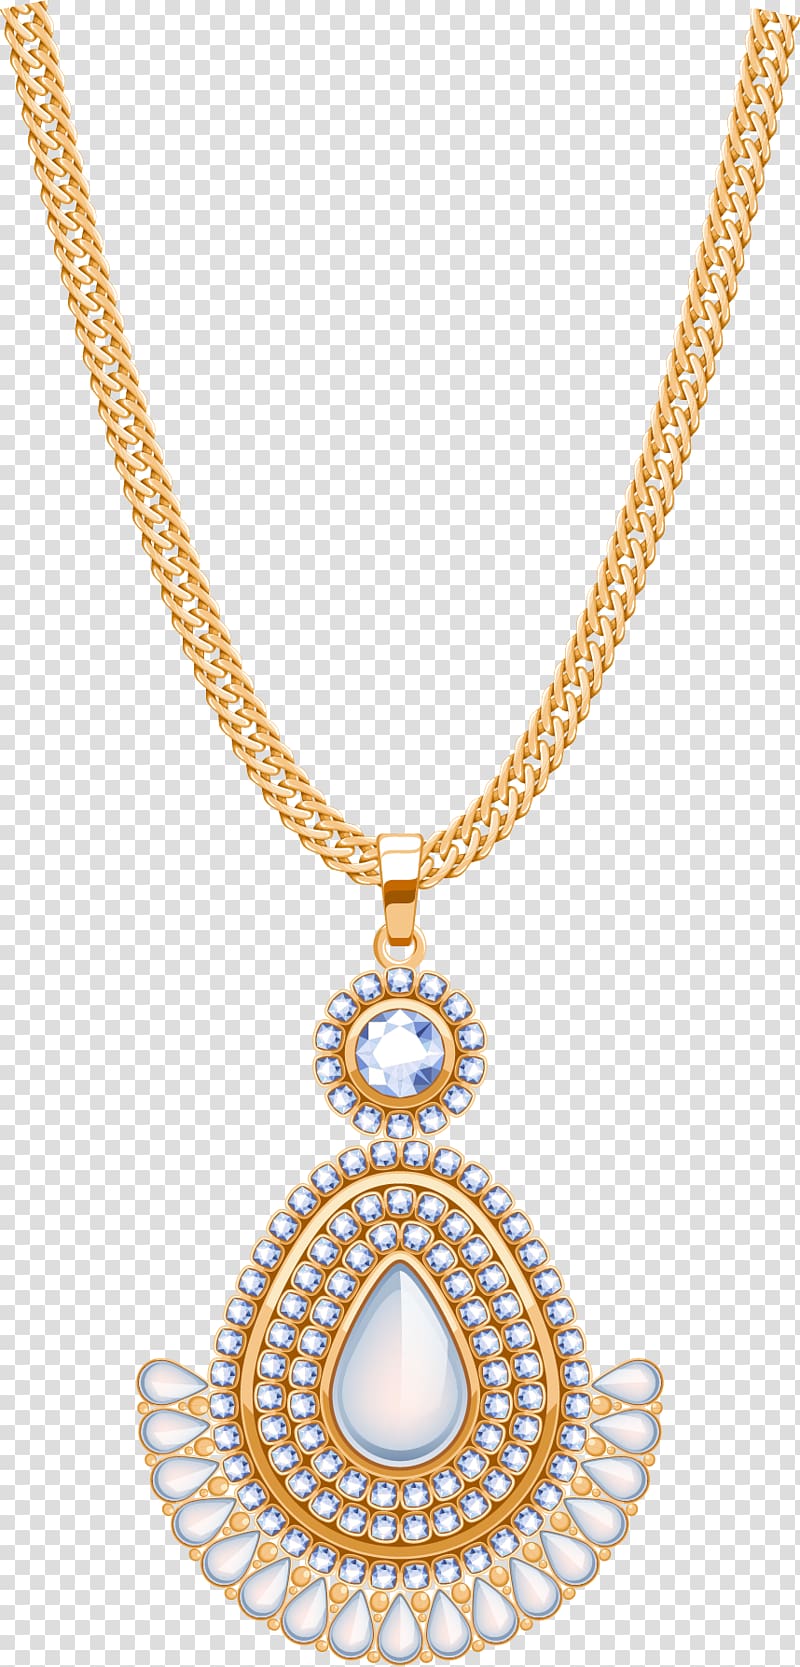 Locket Necklace Gemstone Diamond Jewellery, Dazzling jewelry diamond jewelry transparent background PNG clipart